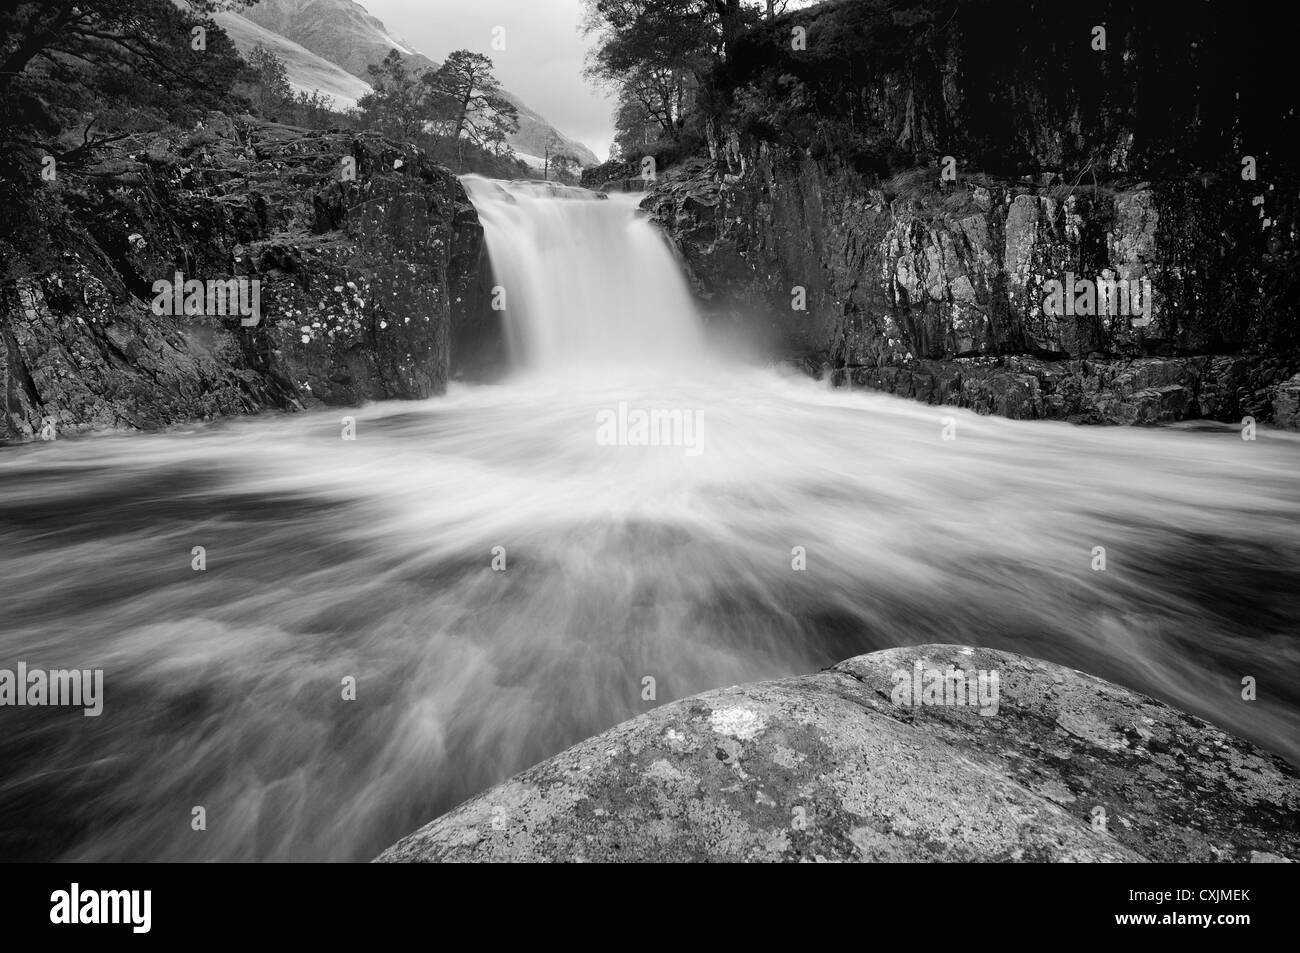 Schwarz / weiß Bild von Eas ein Fhir Mhoir Wasserfall, Glen Etive, Schottland Stockfoto